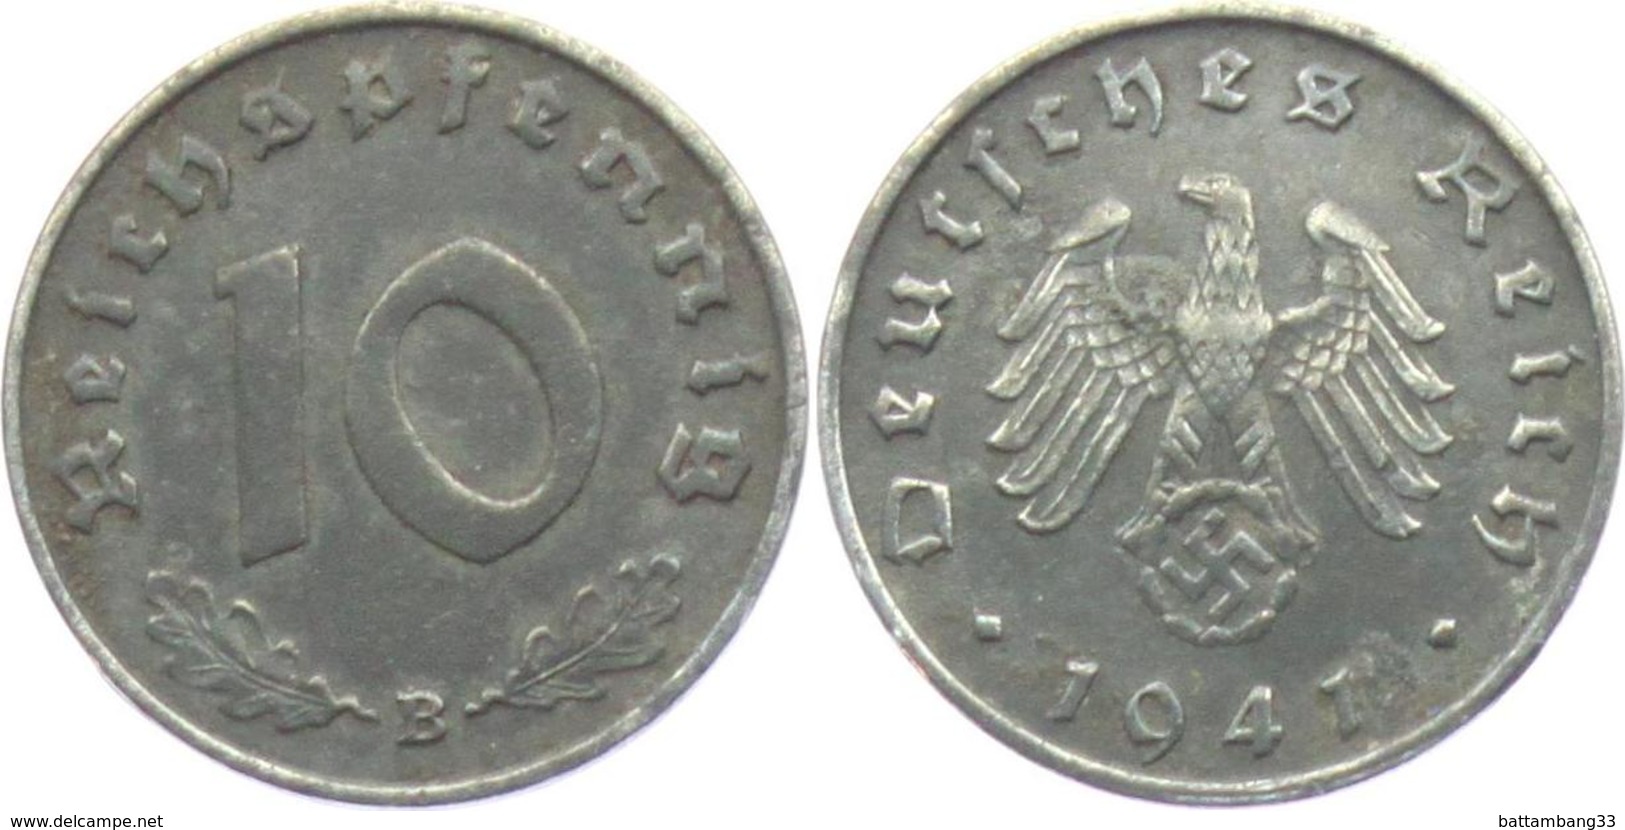 10 REICH PFENNIG 1941 - 10 Reichspfennig